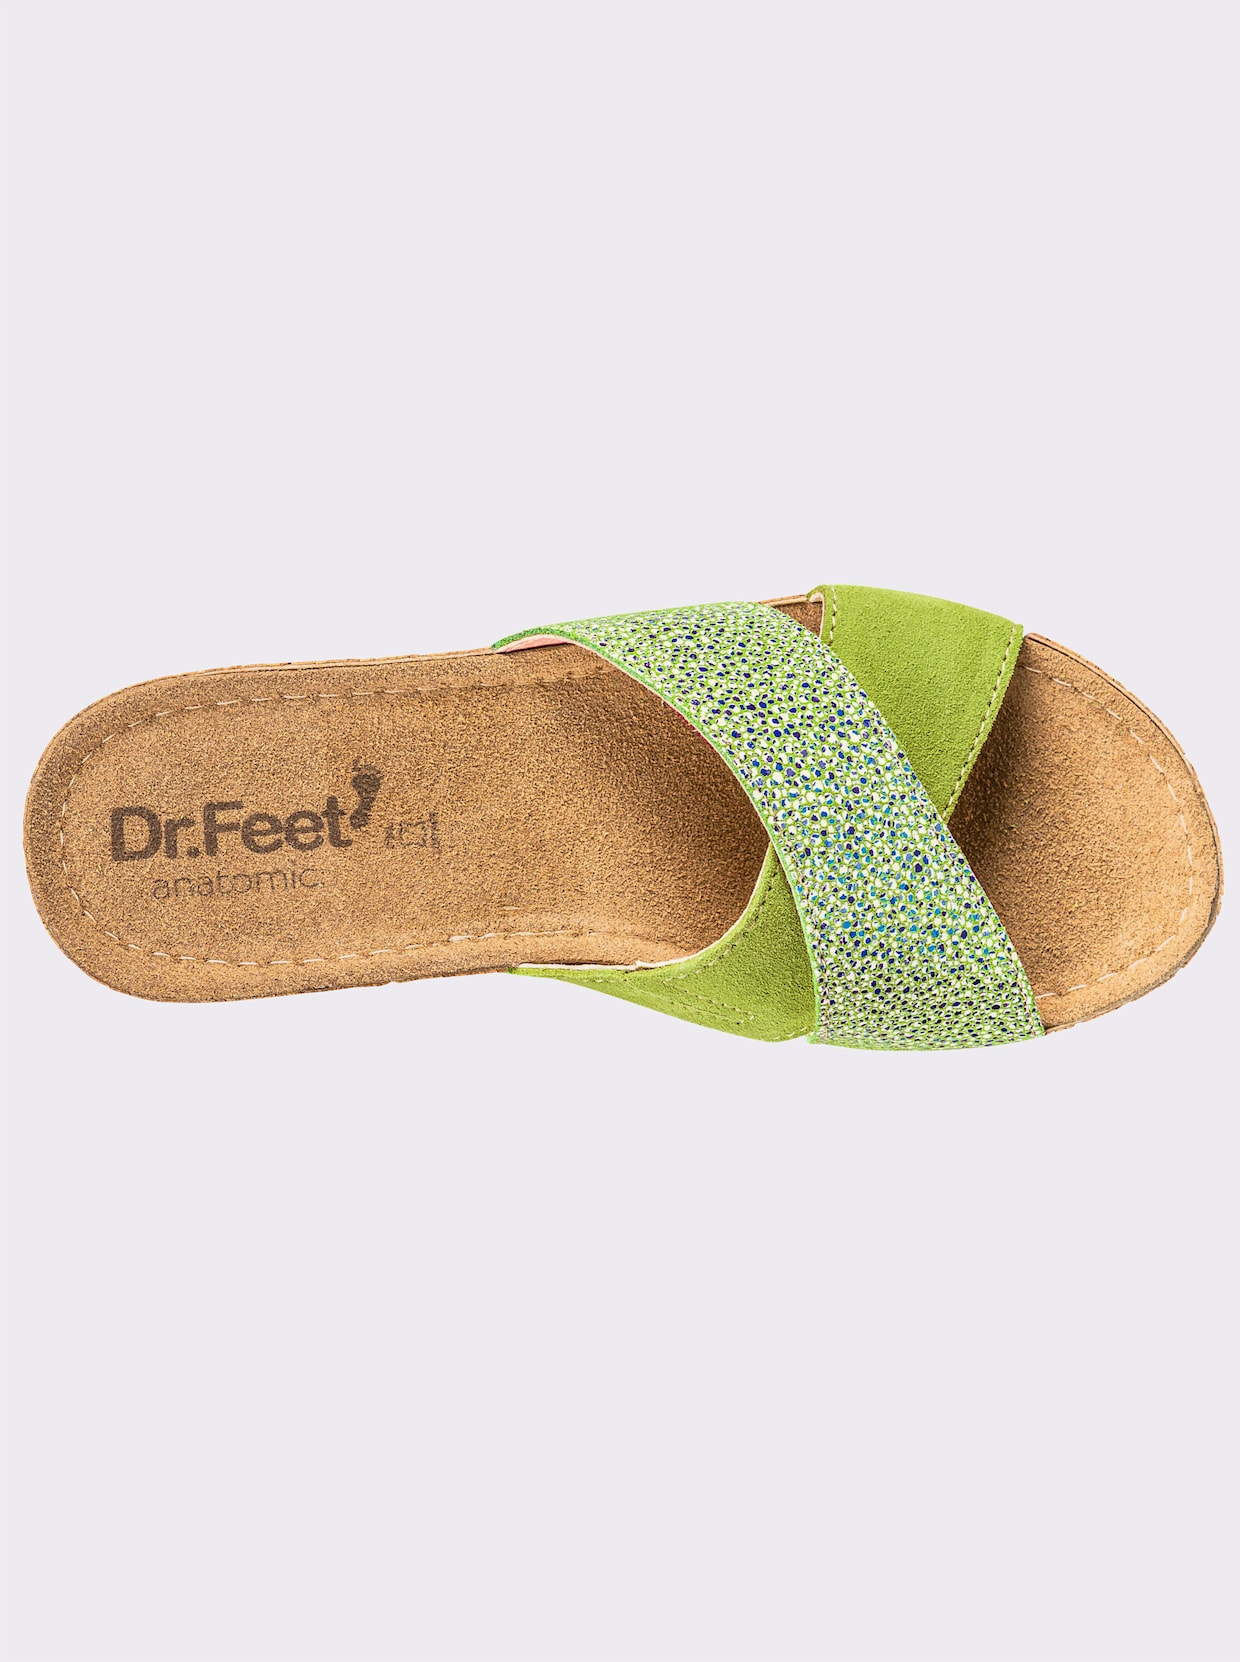 Dr. Feet Mules - vert